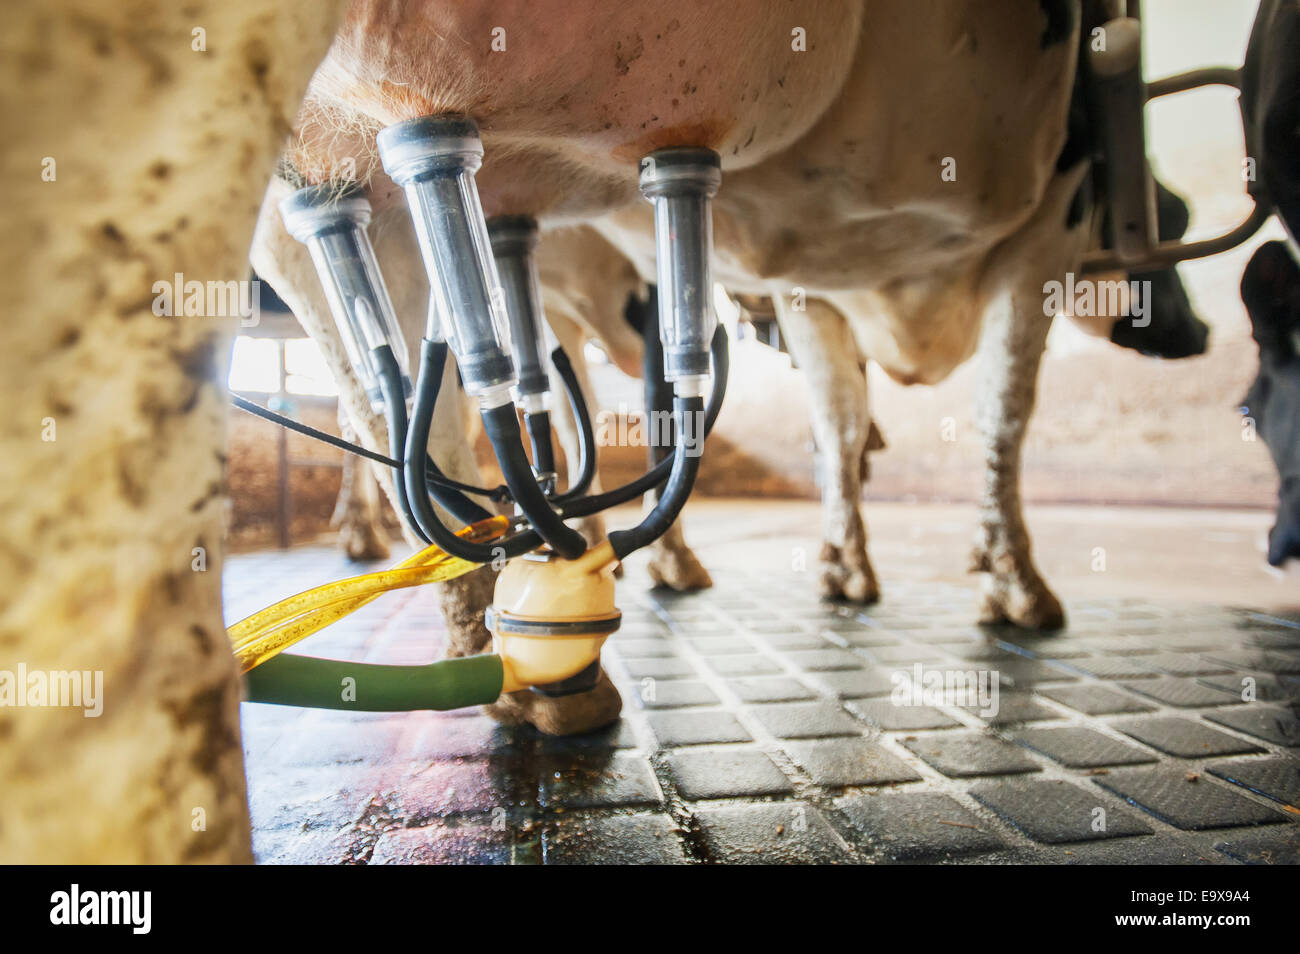 Chiudere fino alla fine della mungitura attrezzature collegate alla vacca da latte; Ridgely, Maryland, Stati Uniti d'America Foto Stock